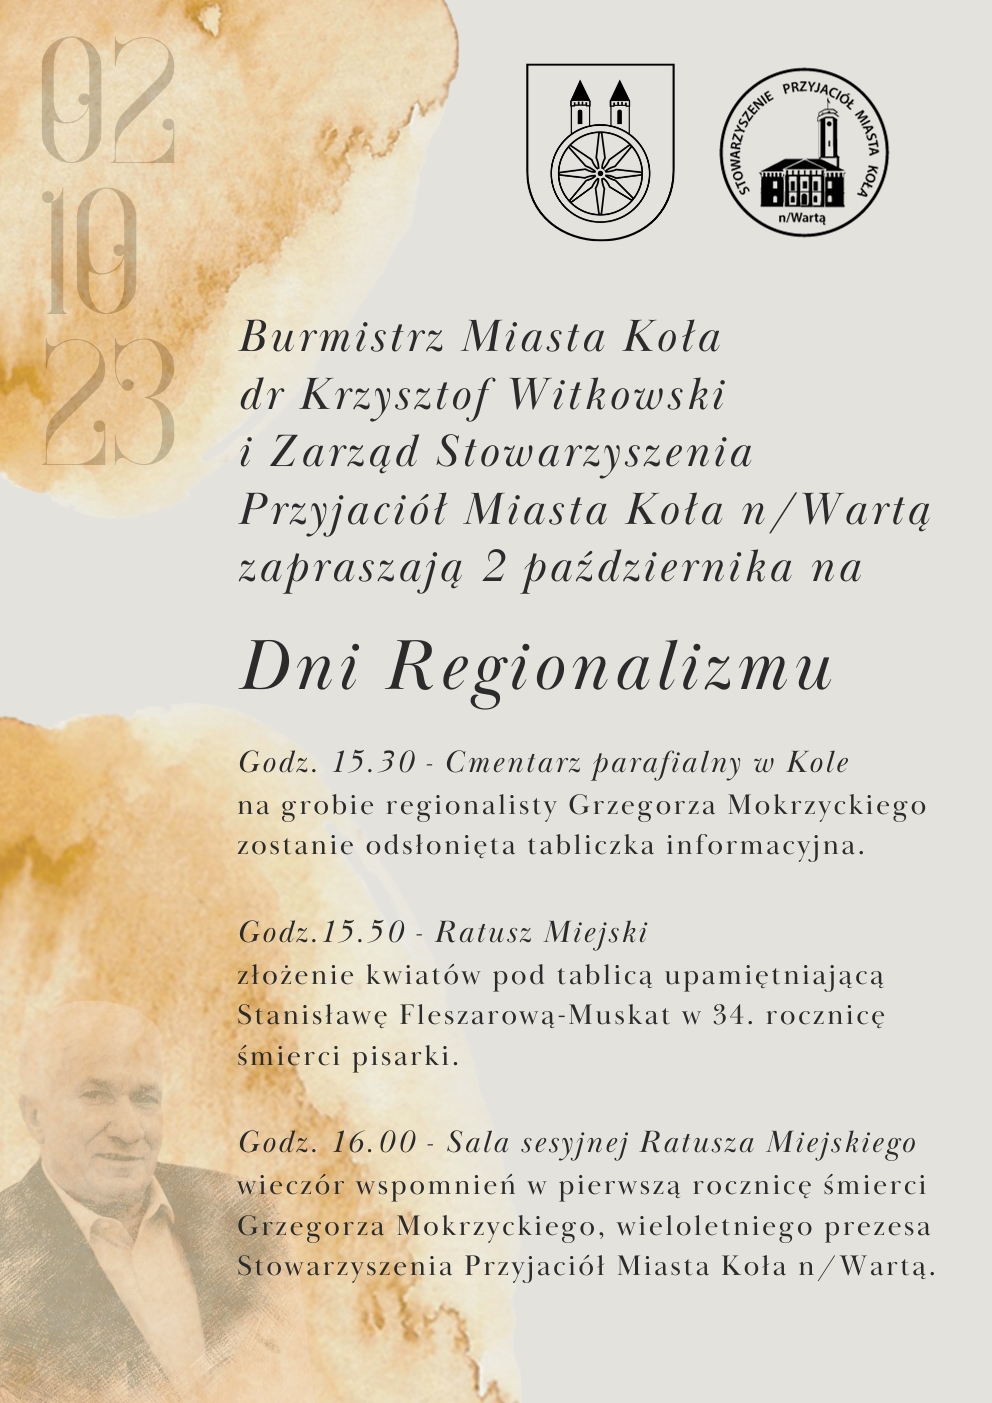 Plakat informujący o Dniach Regionalizmu, tekst pod plakatem